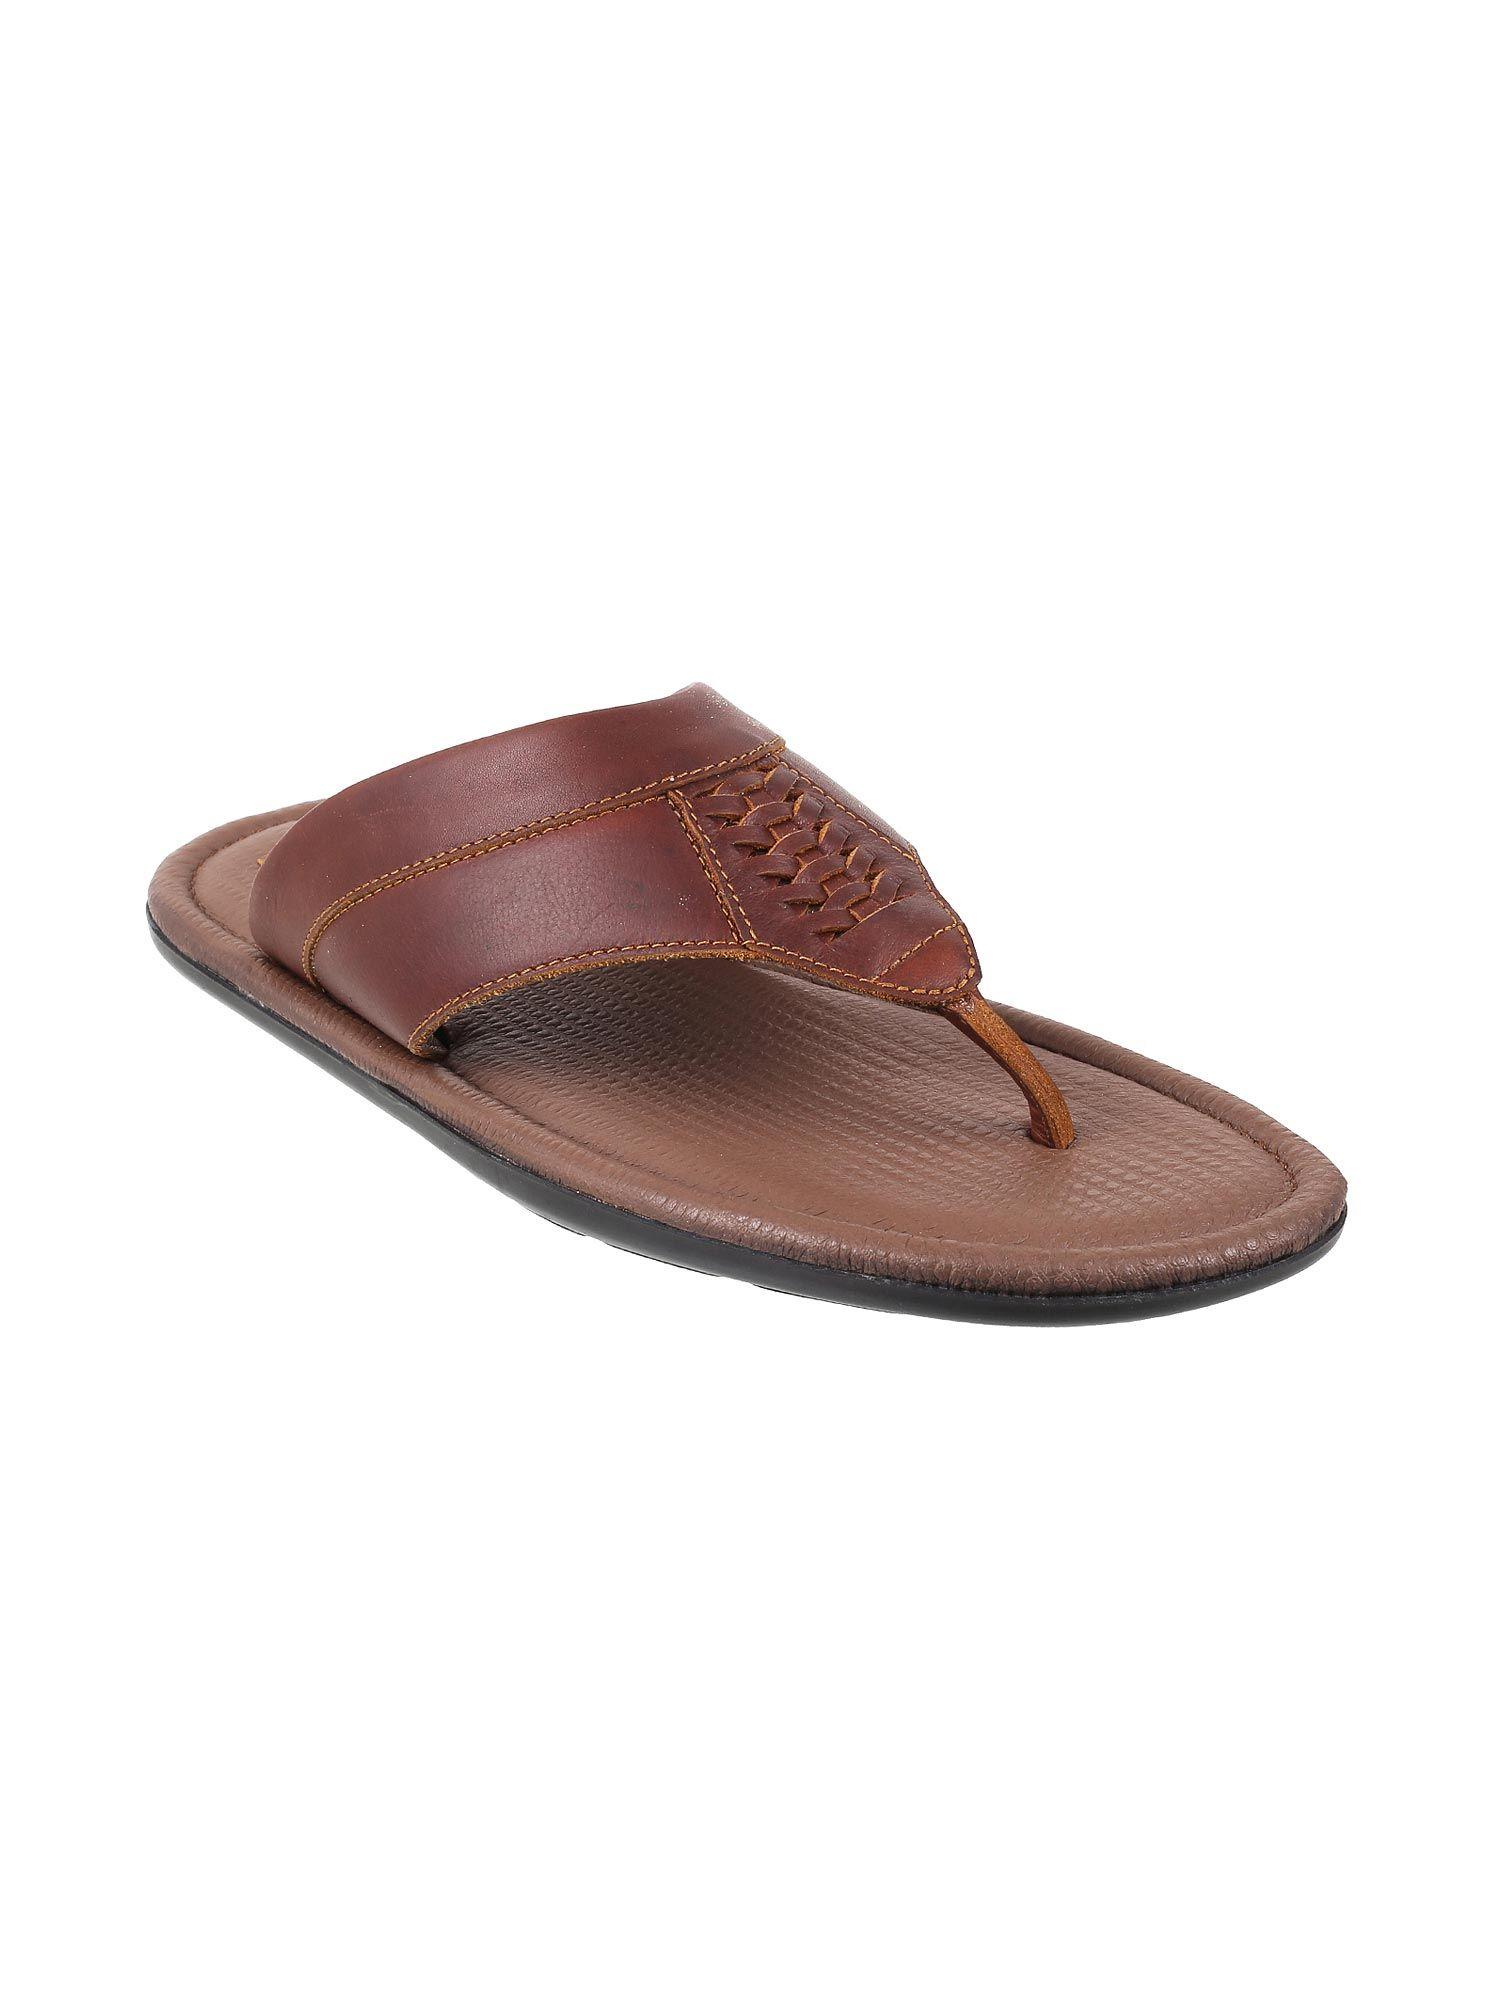 mens-brown-sandals